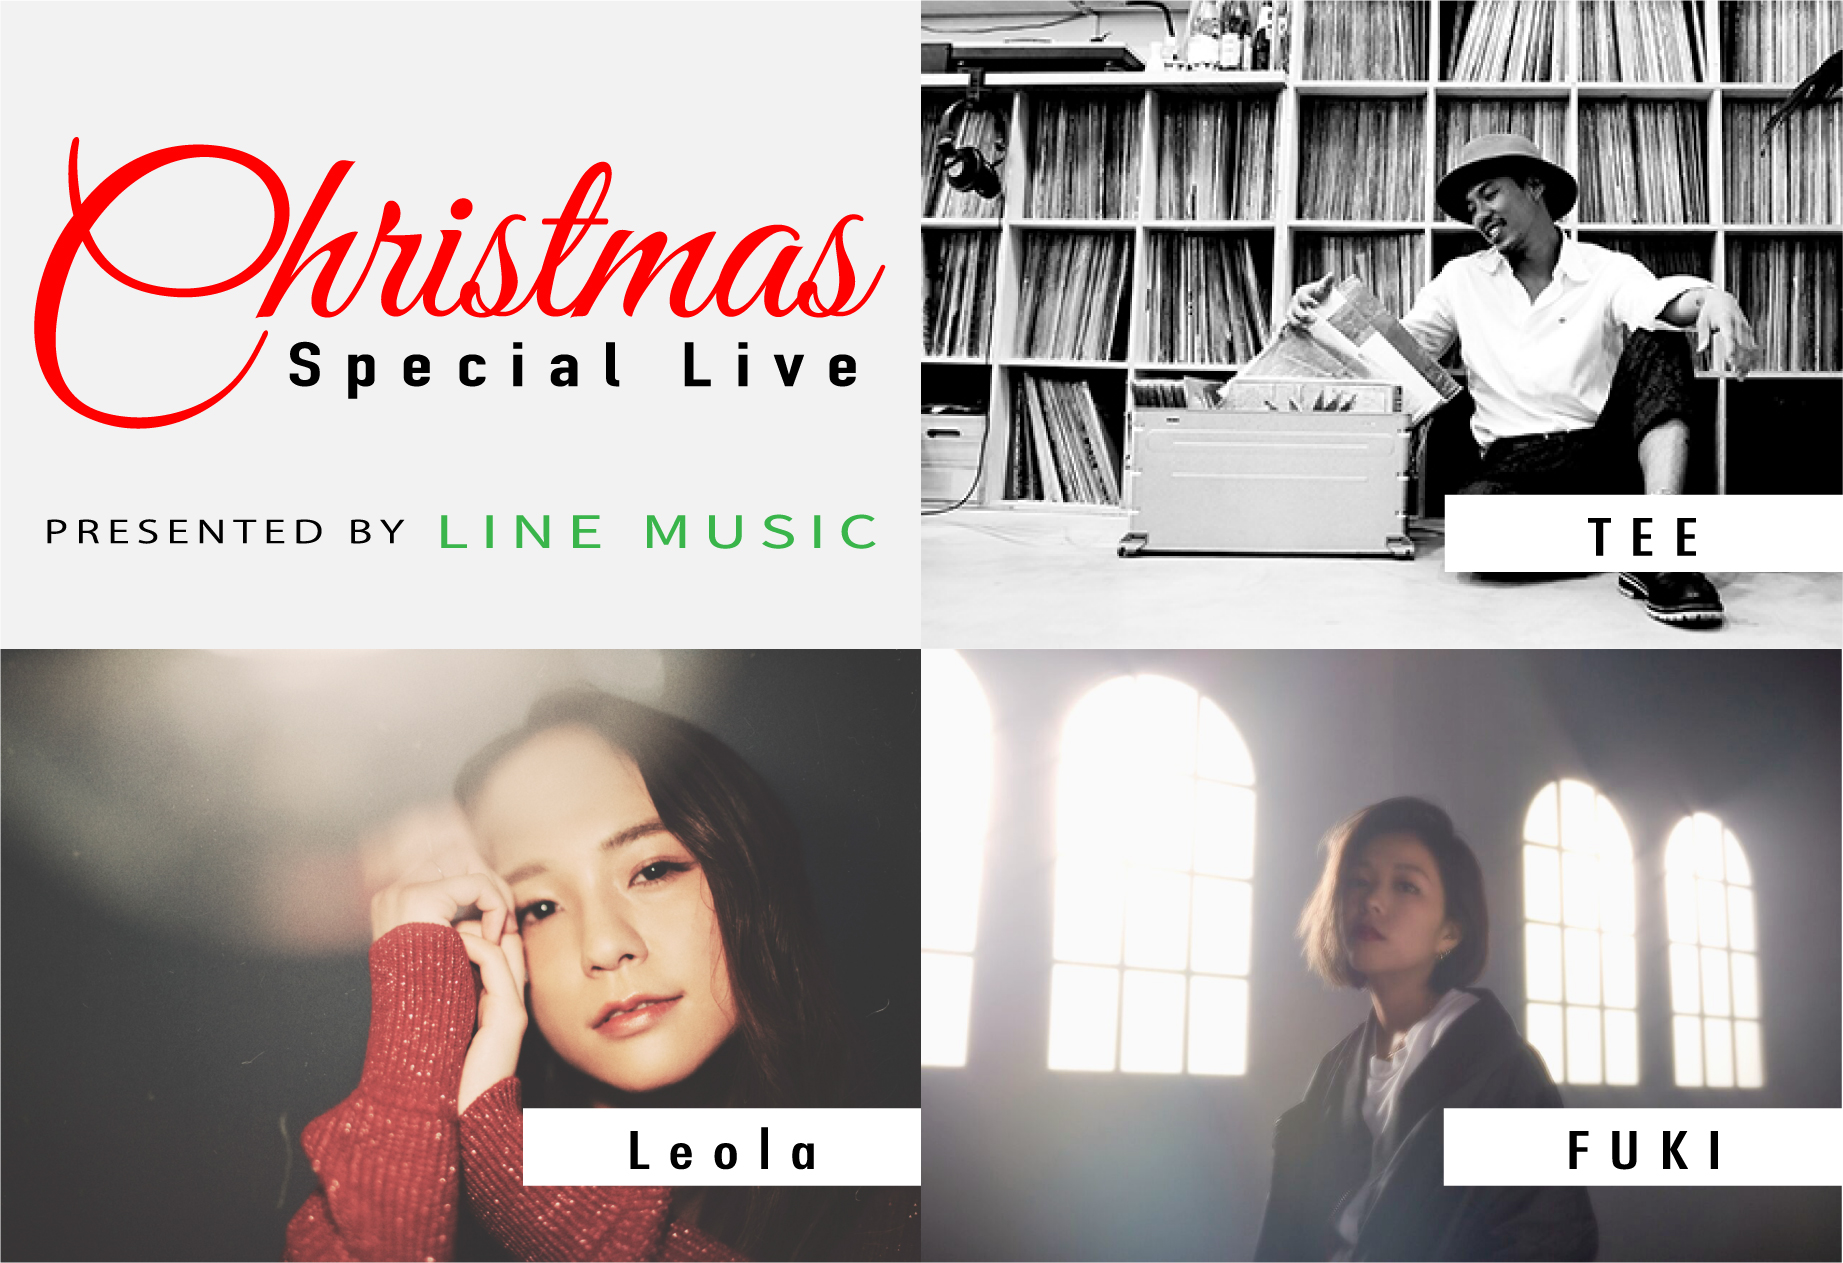 Tee Fuki Leolaのライブが目の前で見れるline Music初の クリスマススペシャルライブ を開催 さらに平井 大のスペシャル生配信も決定 Line株式会社のプレスリリース